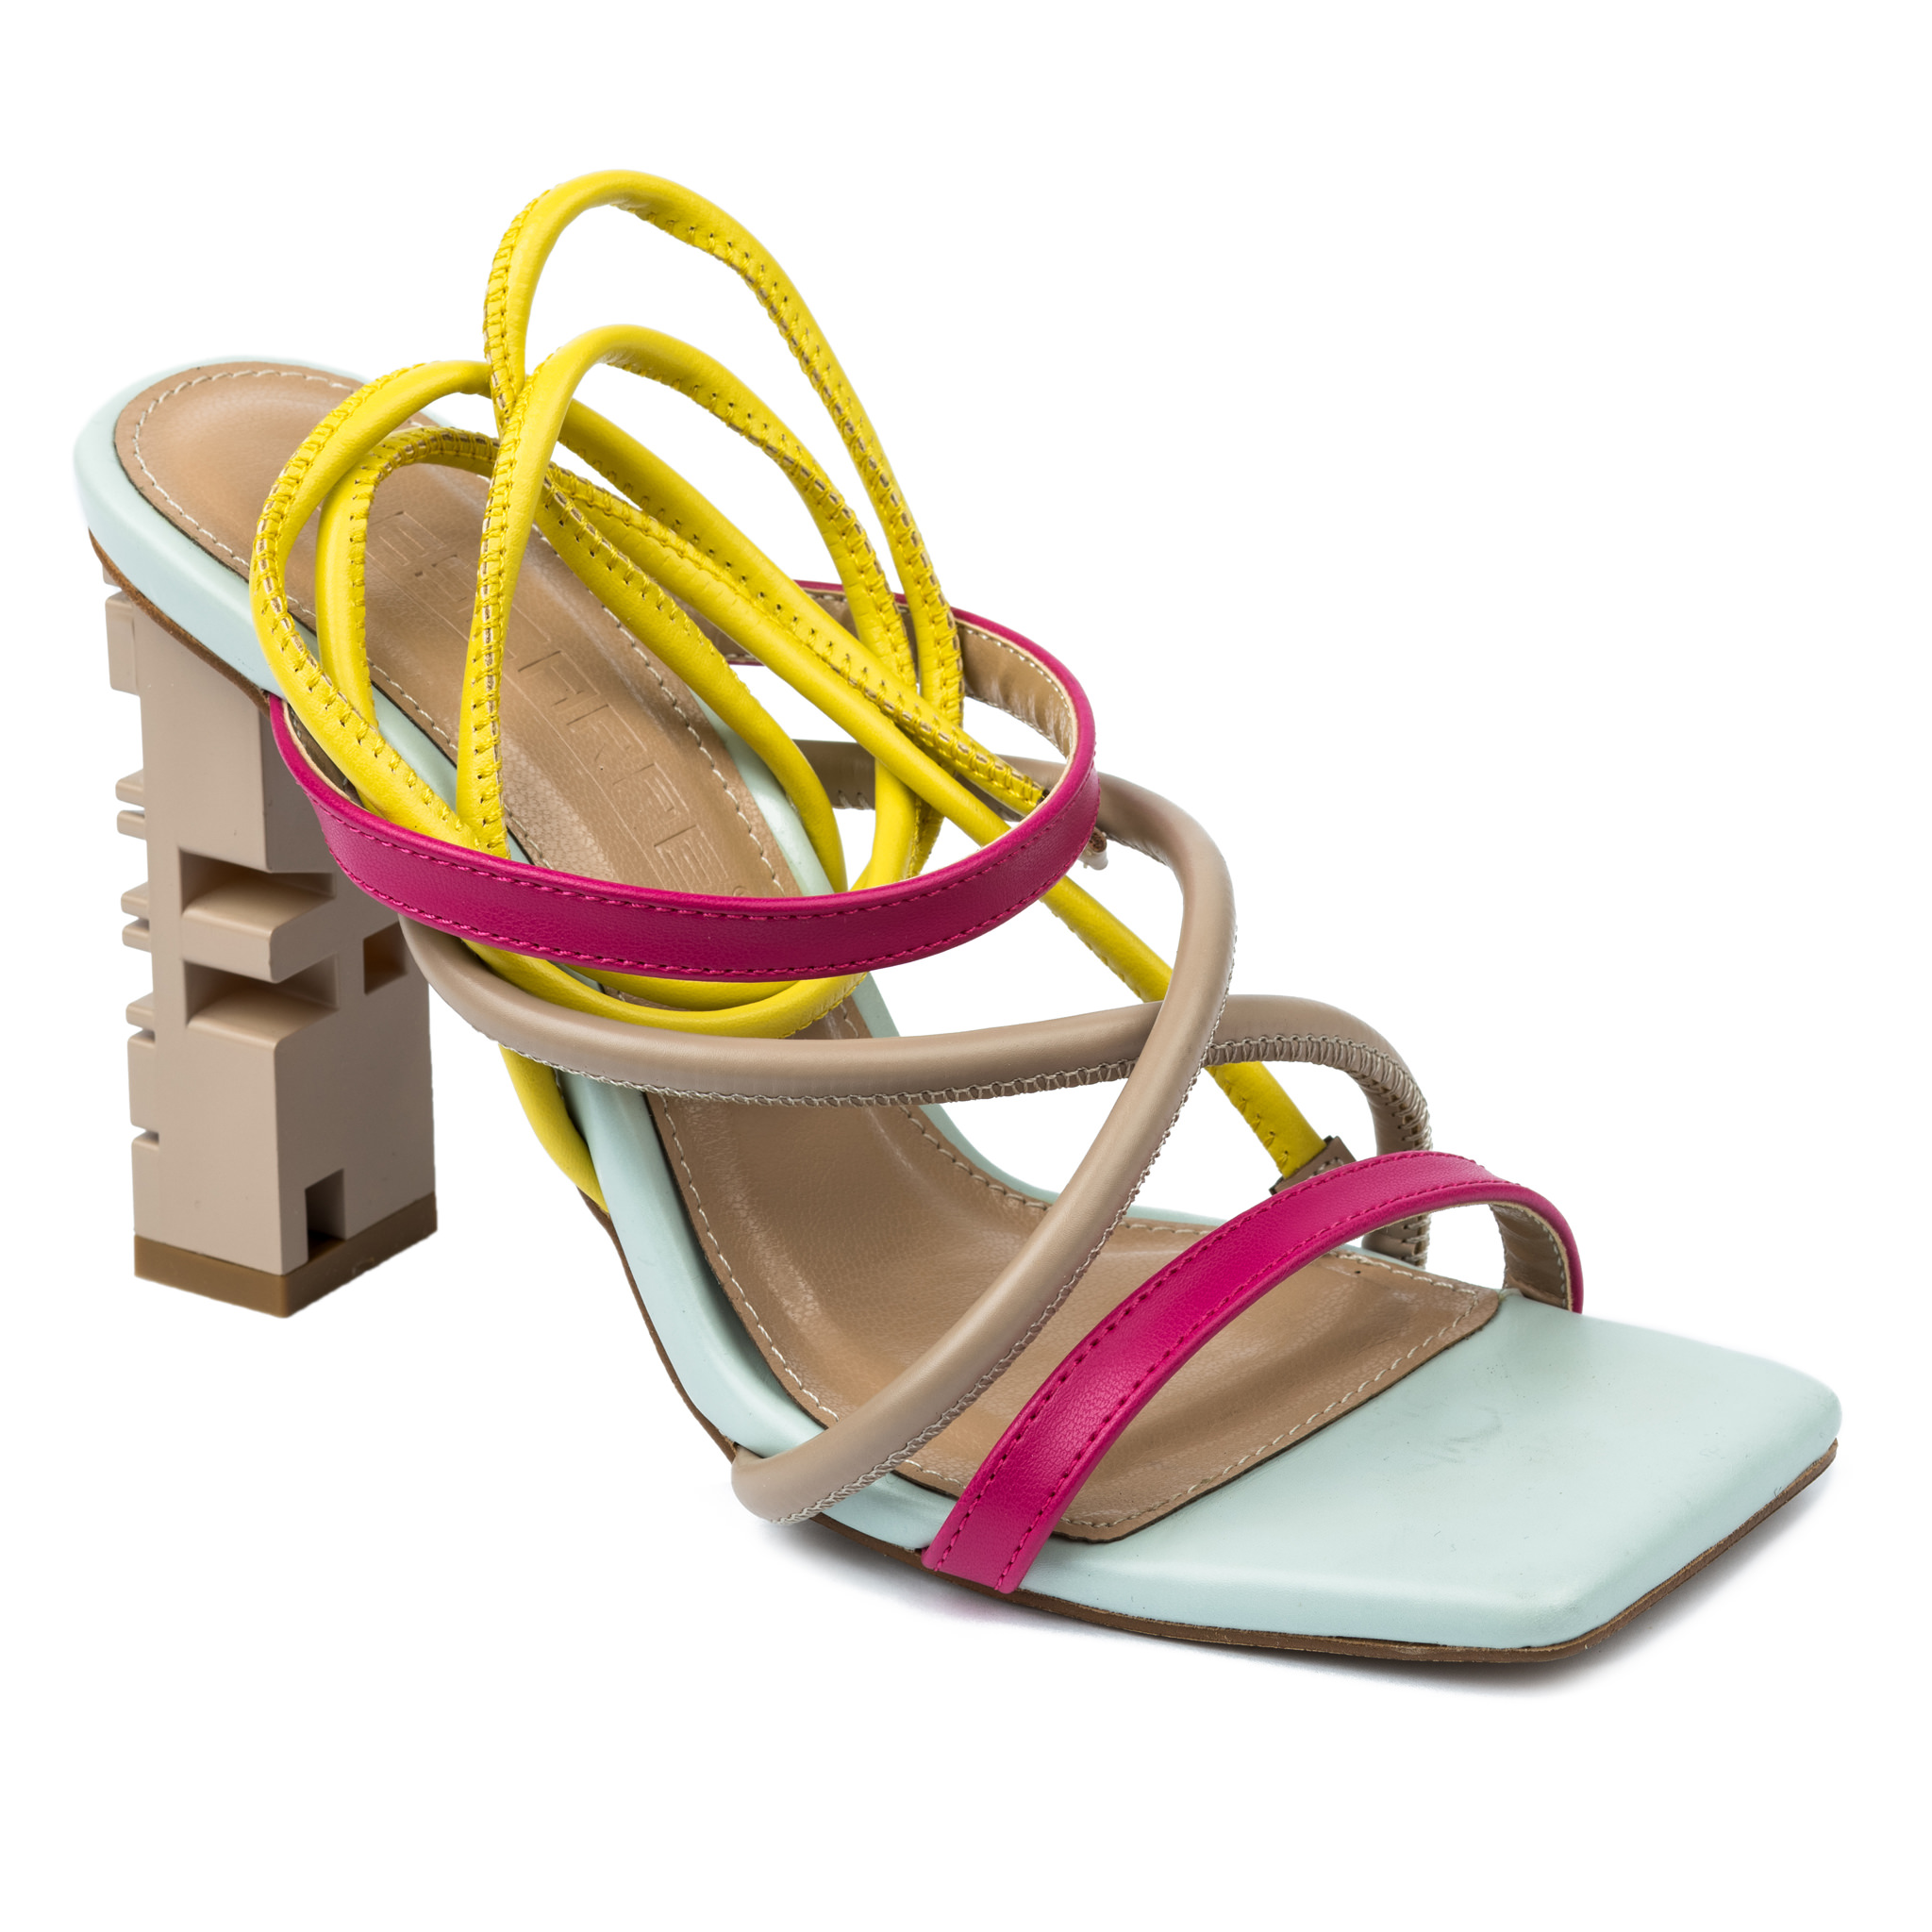 Women sandals A714 - BEIGE